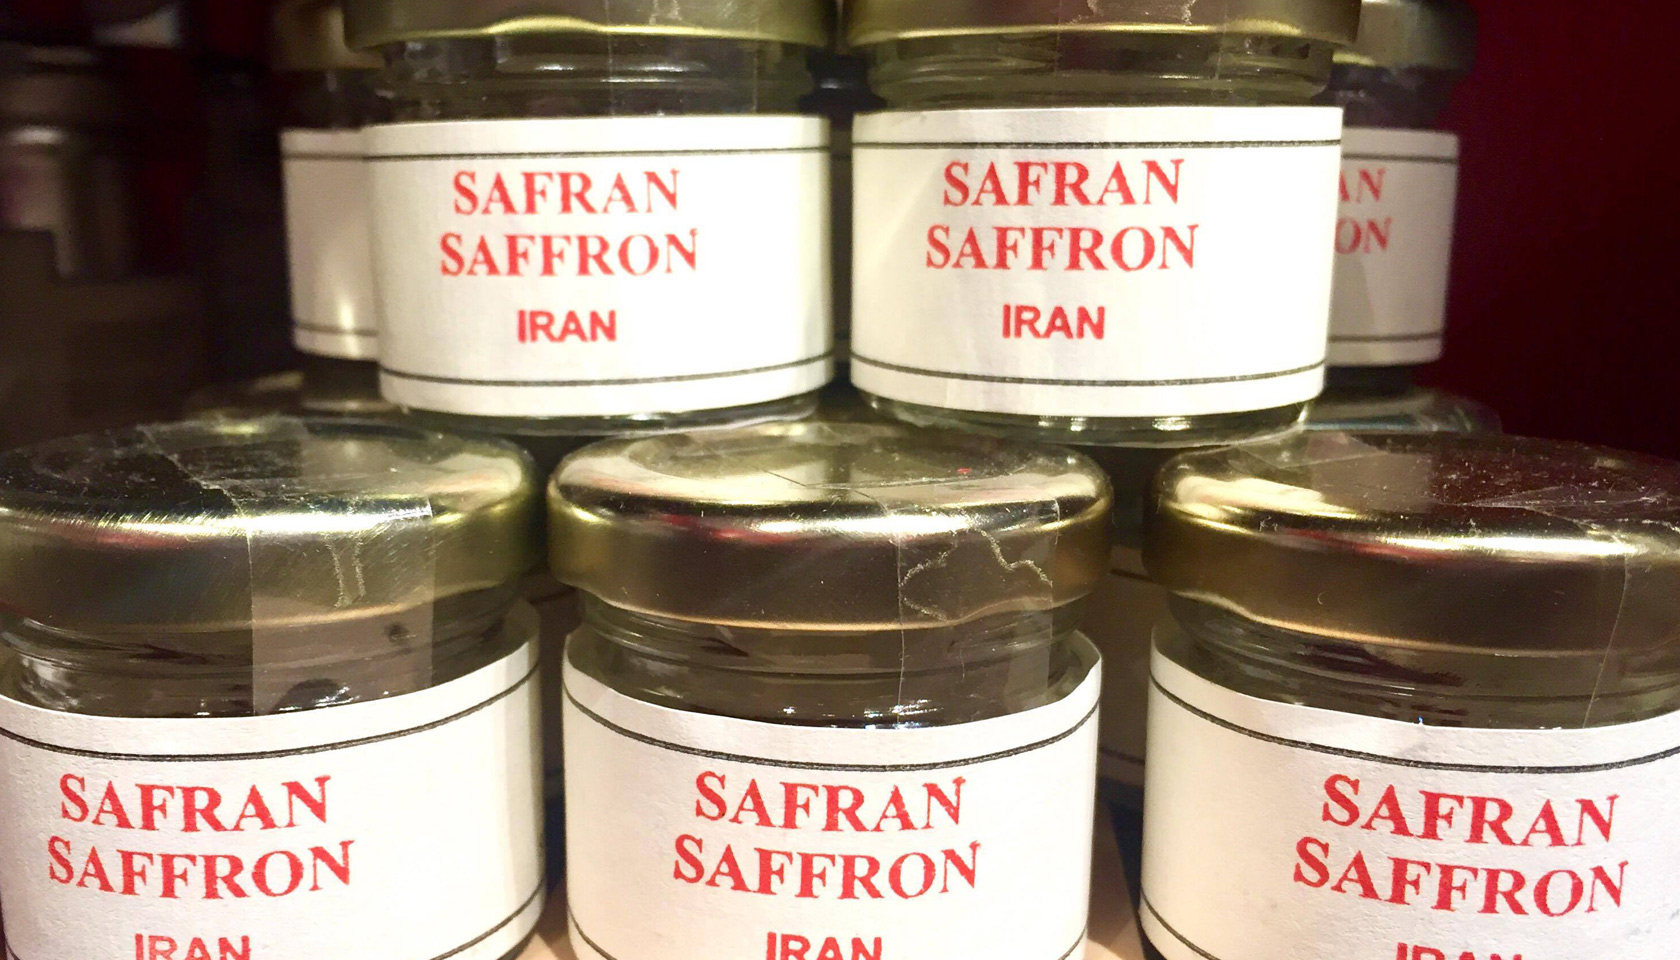 What is saffron?